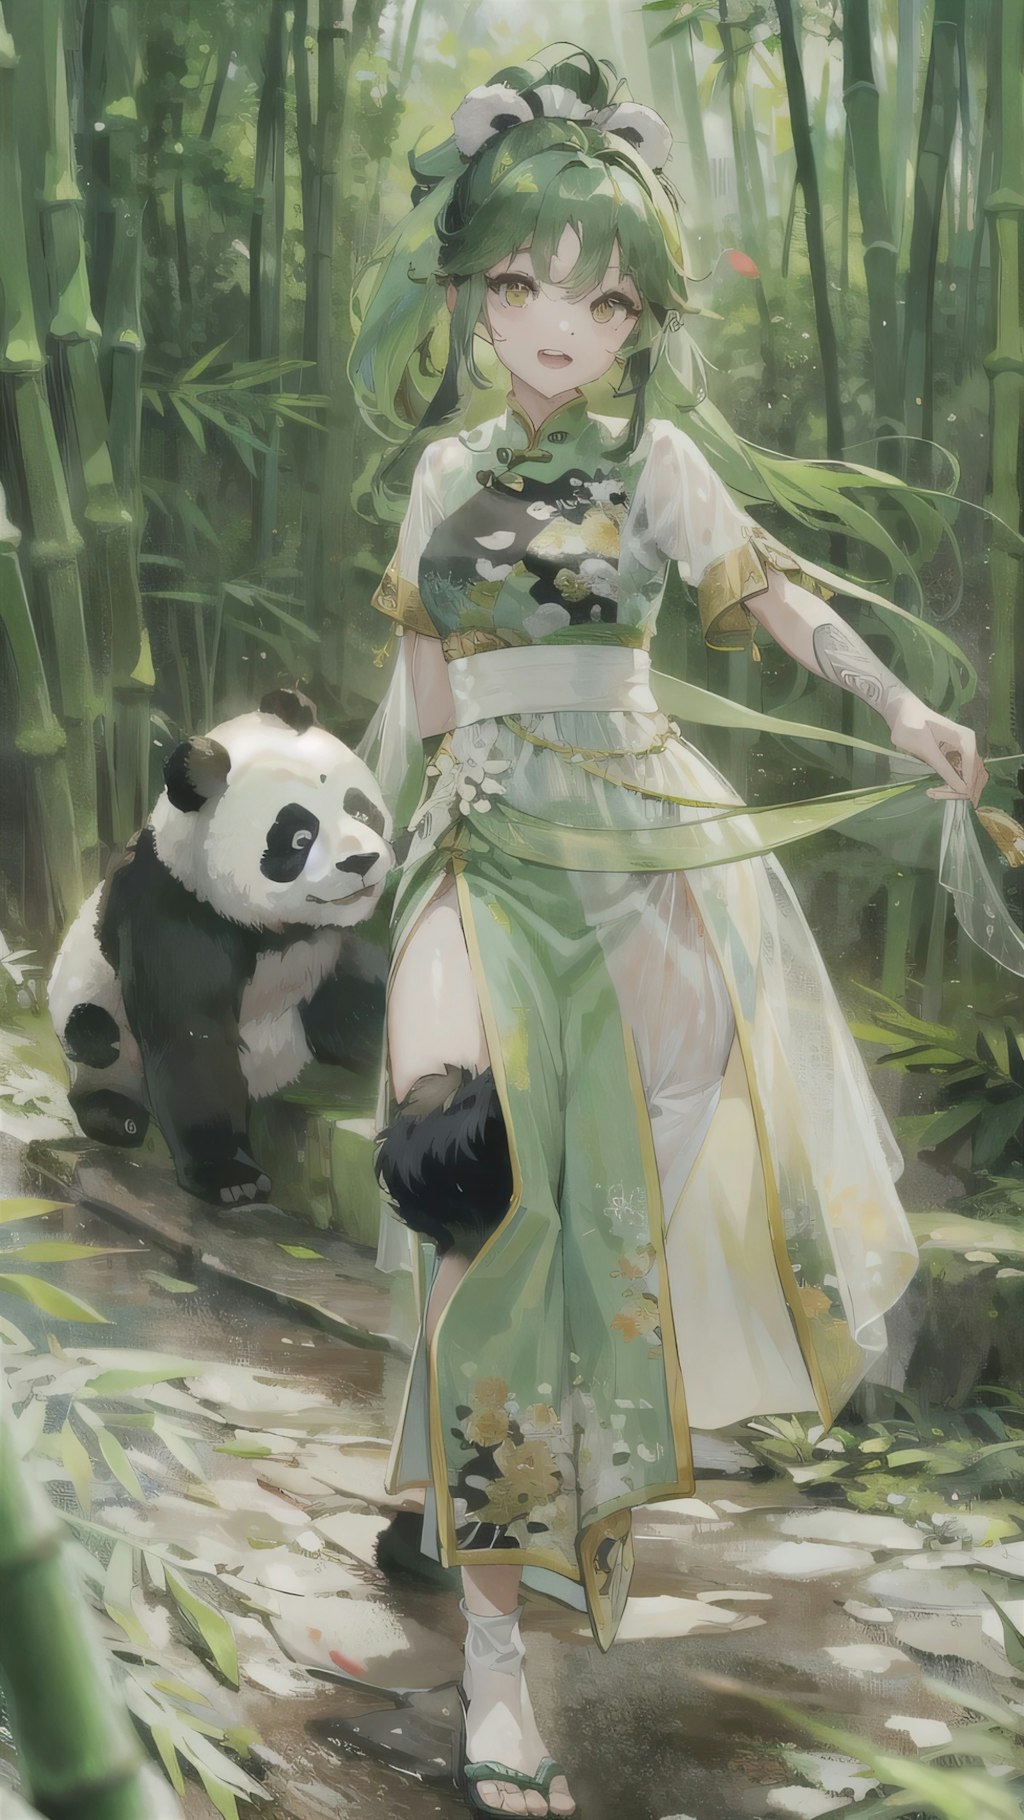 竹林公園でパンダと遭遇